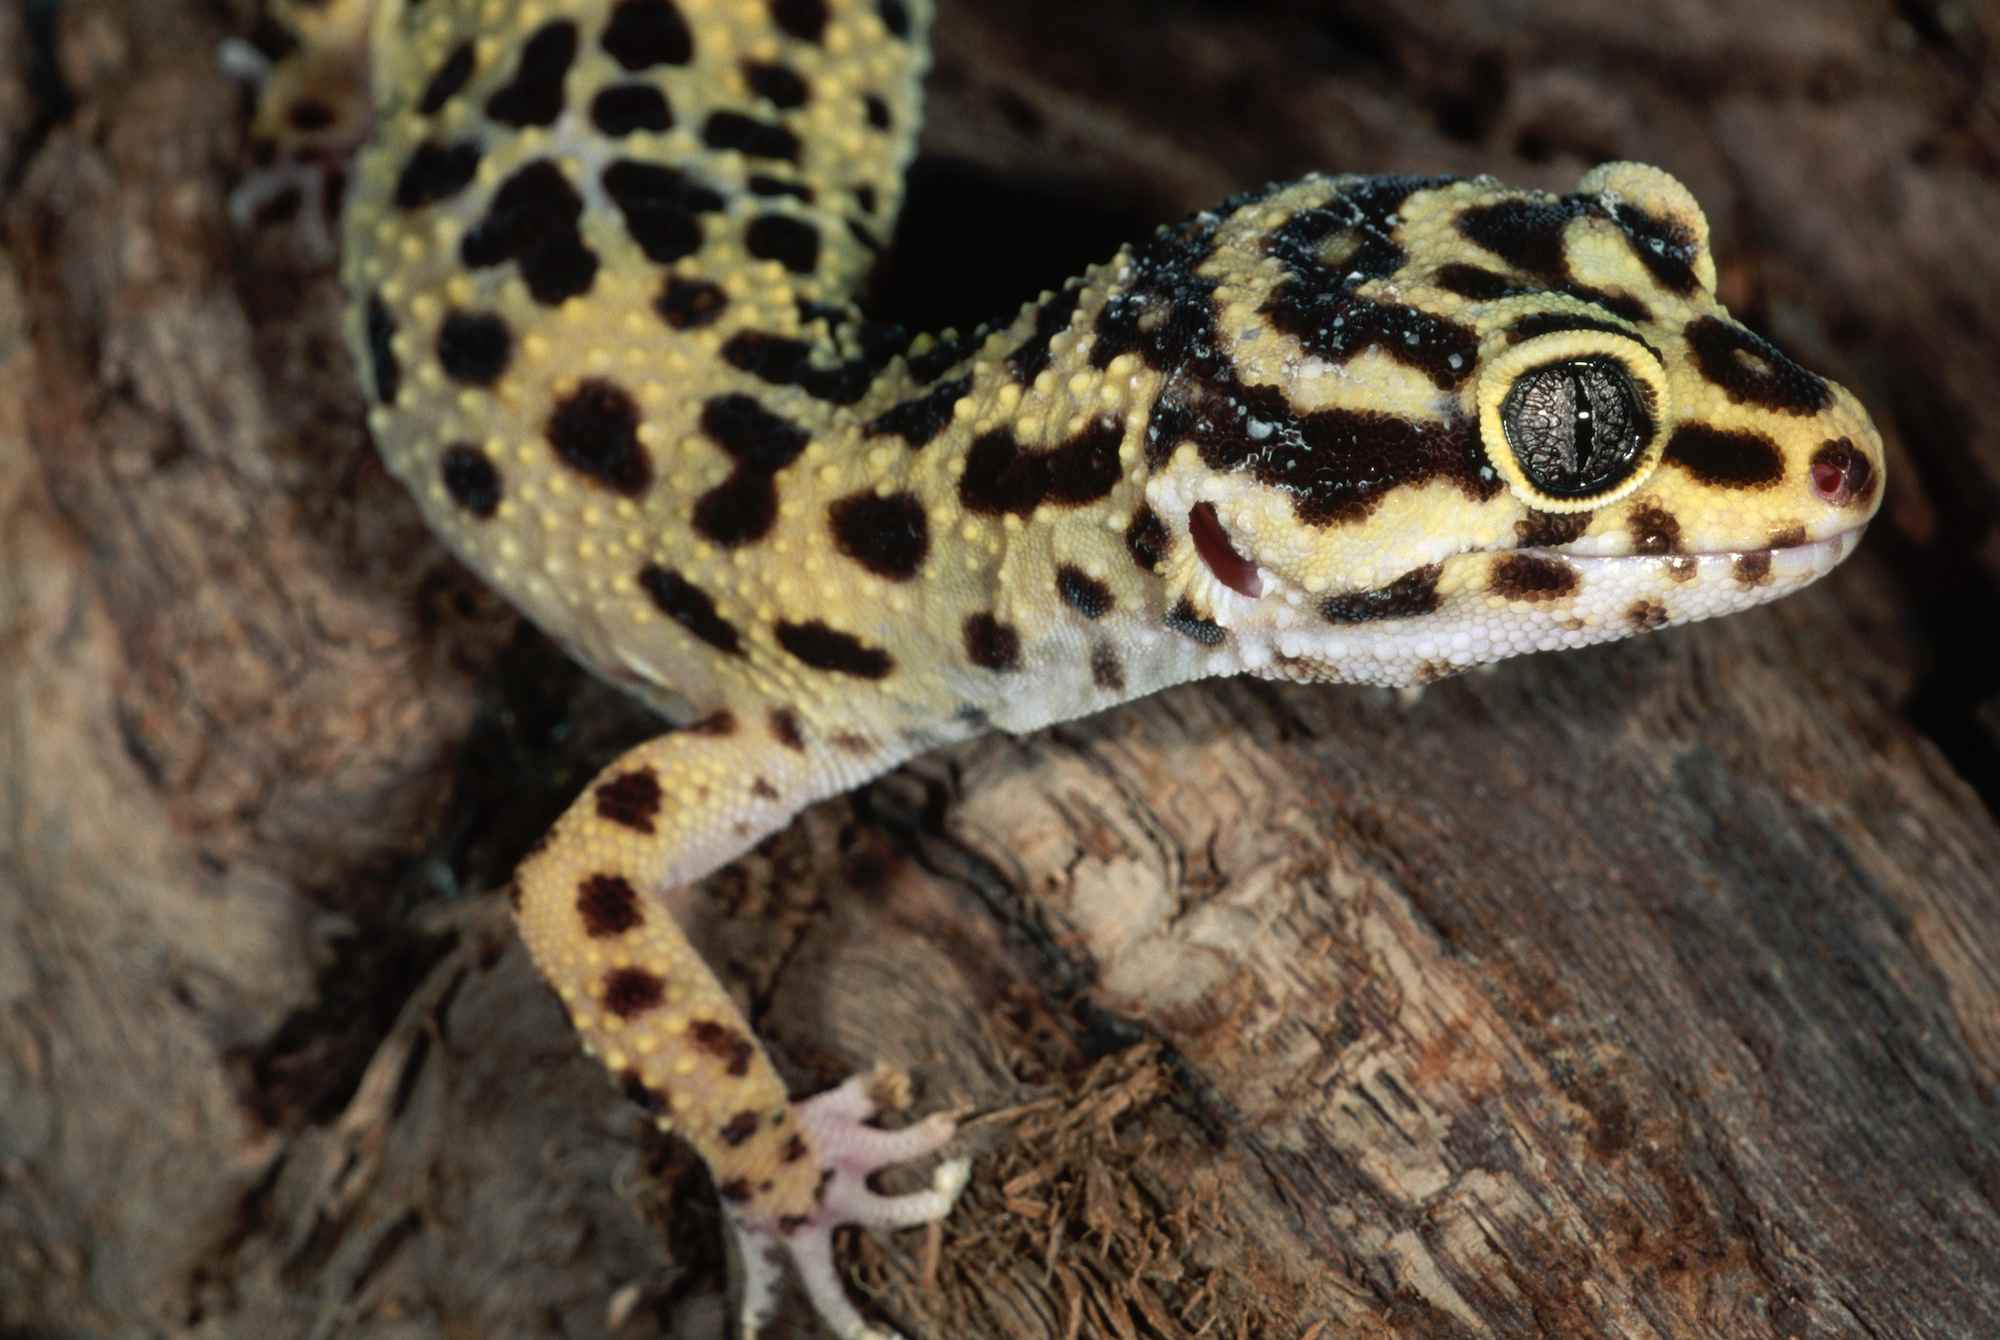 Leopard gecko on wood